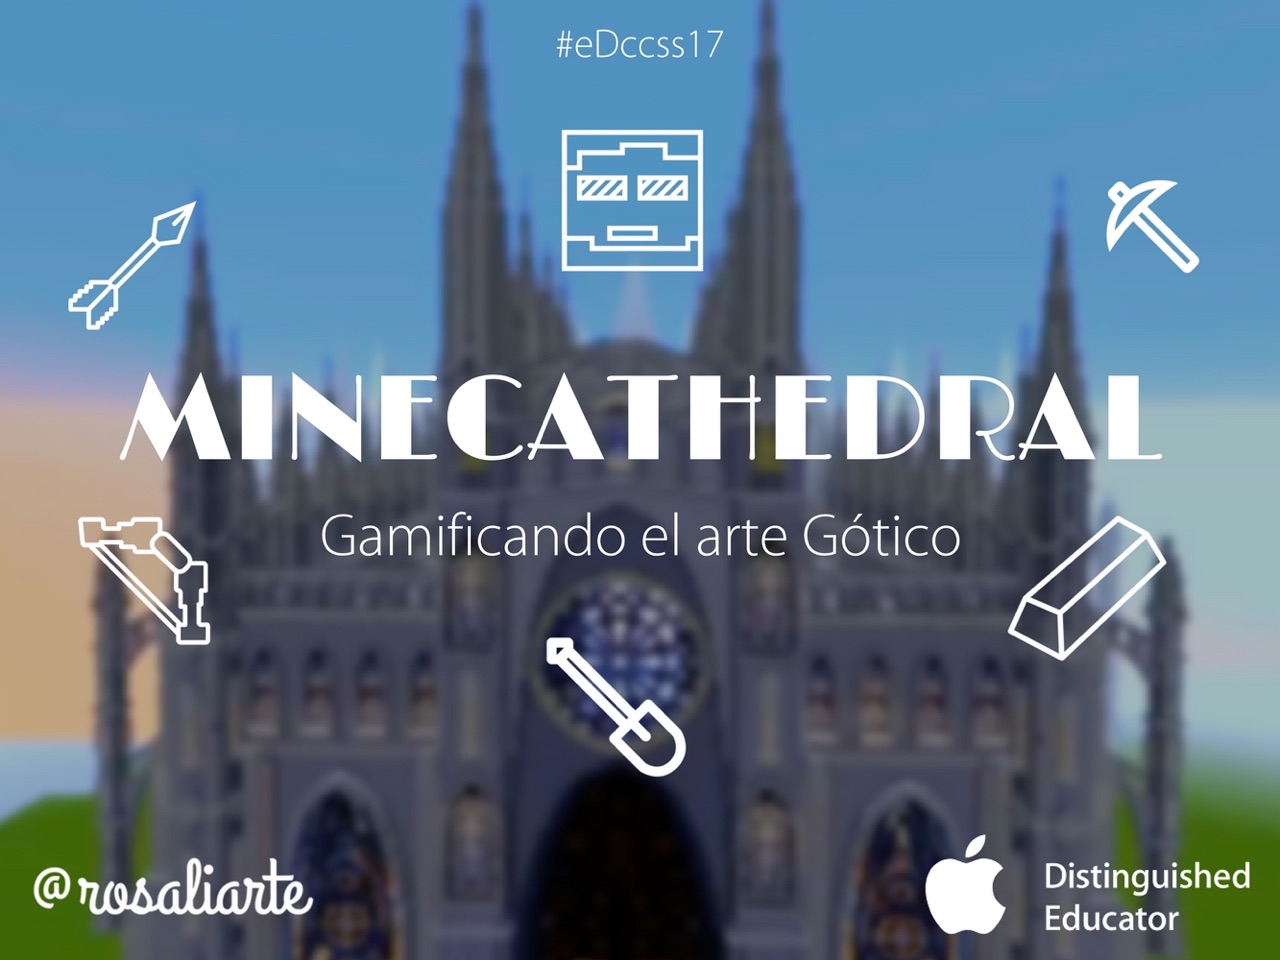 #MineCathedral, gamificando el arte gótico con Minecraft